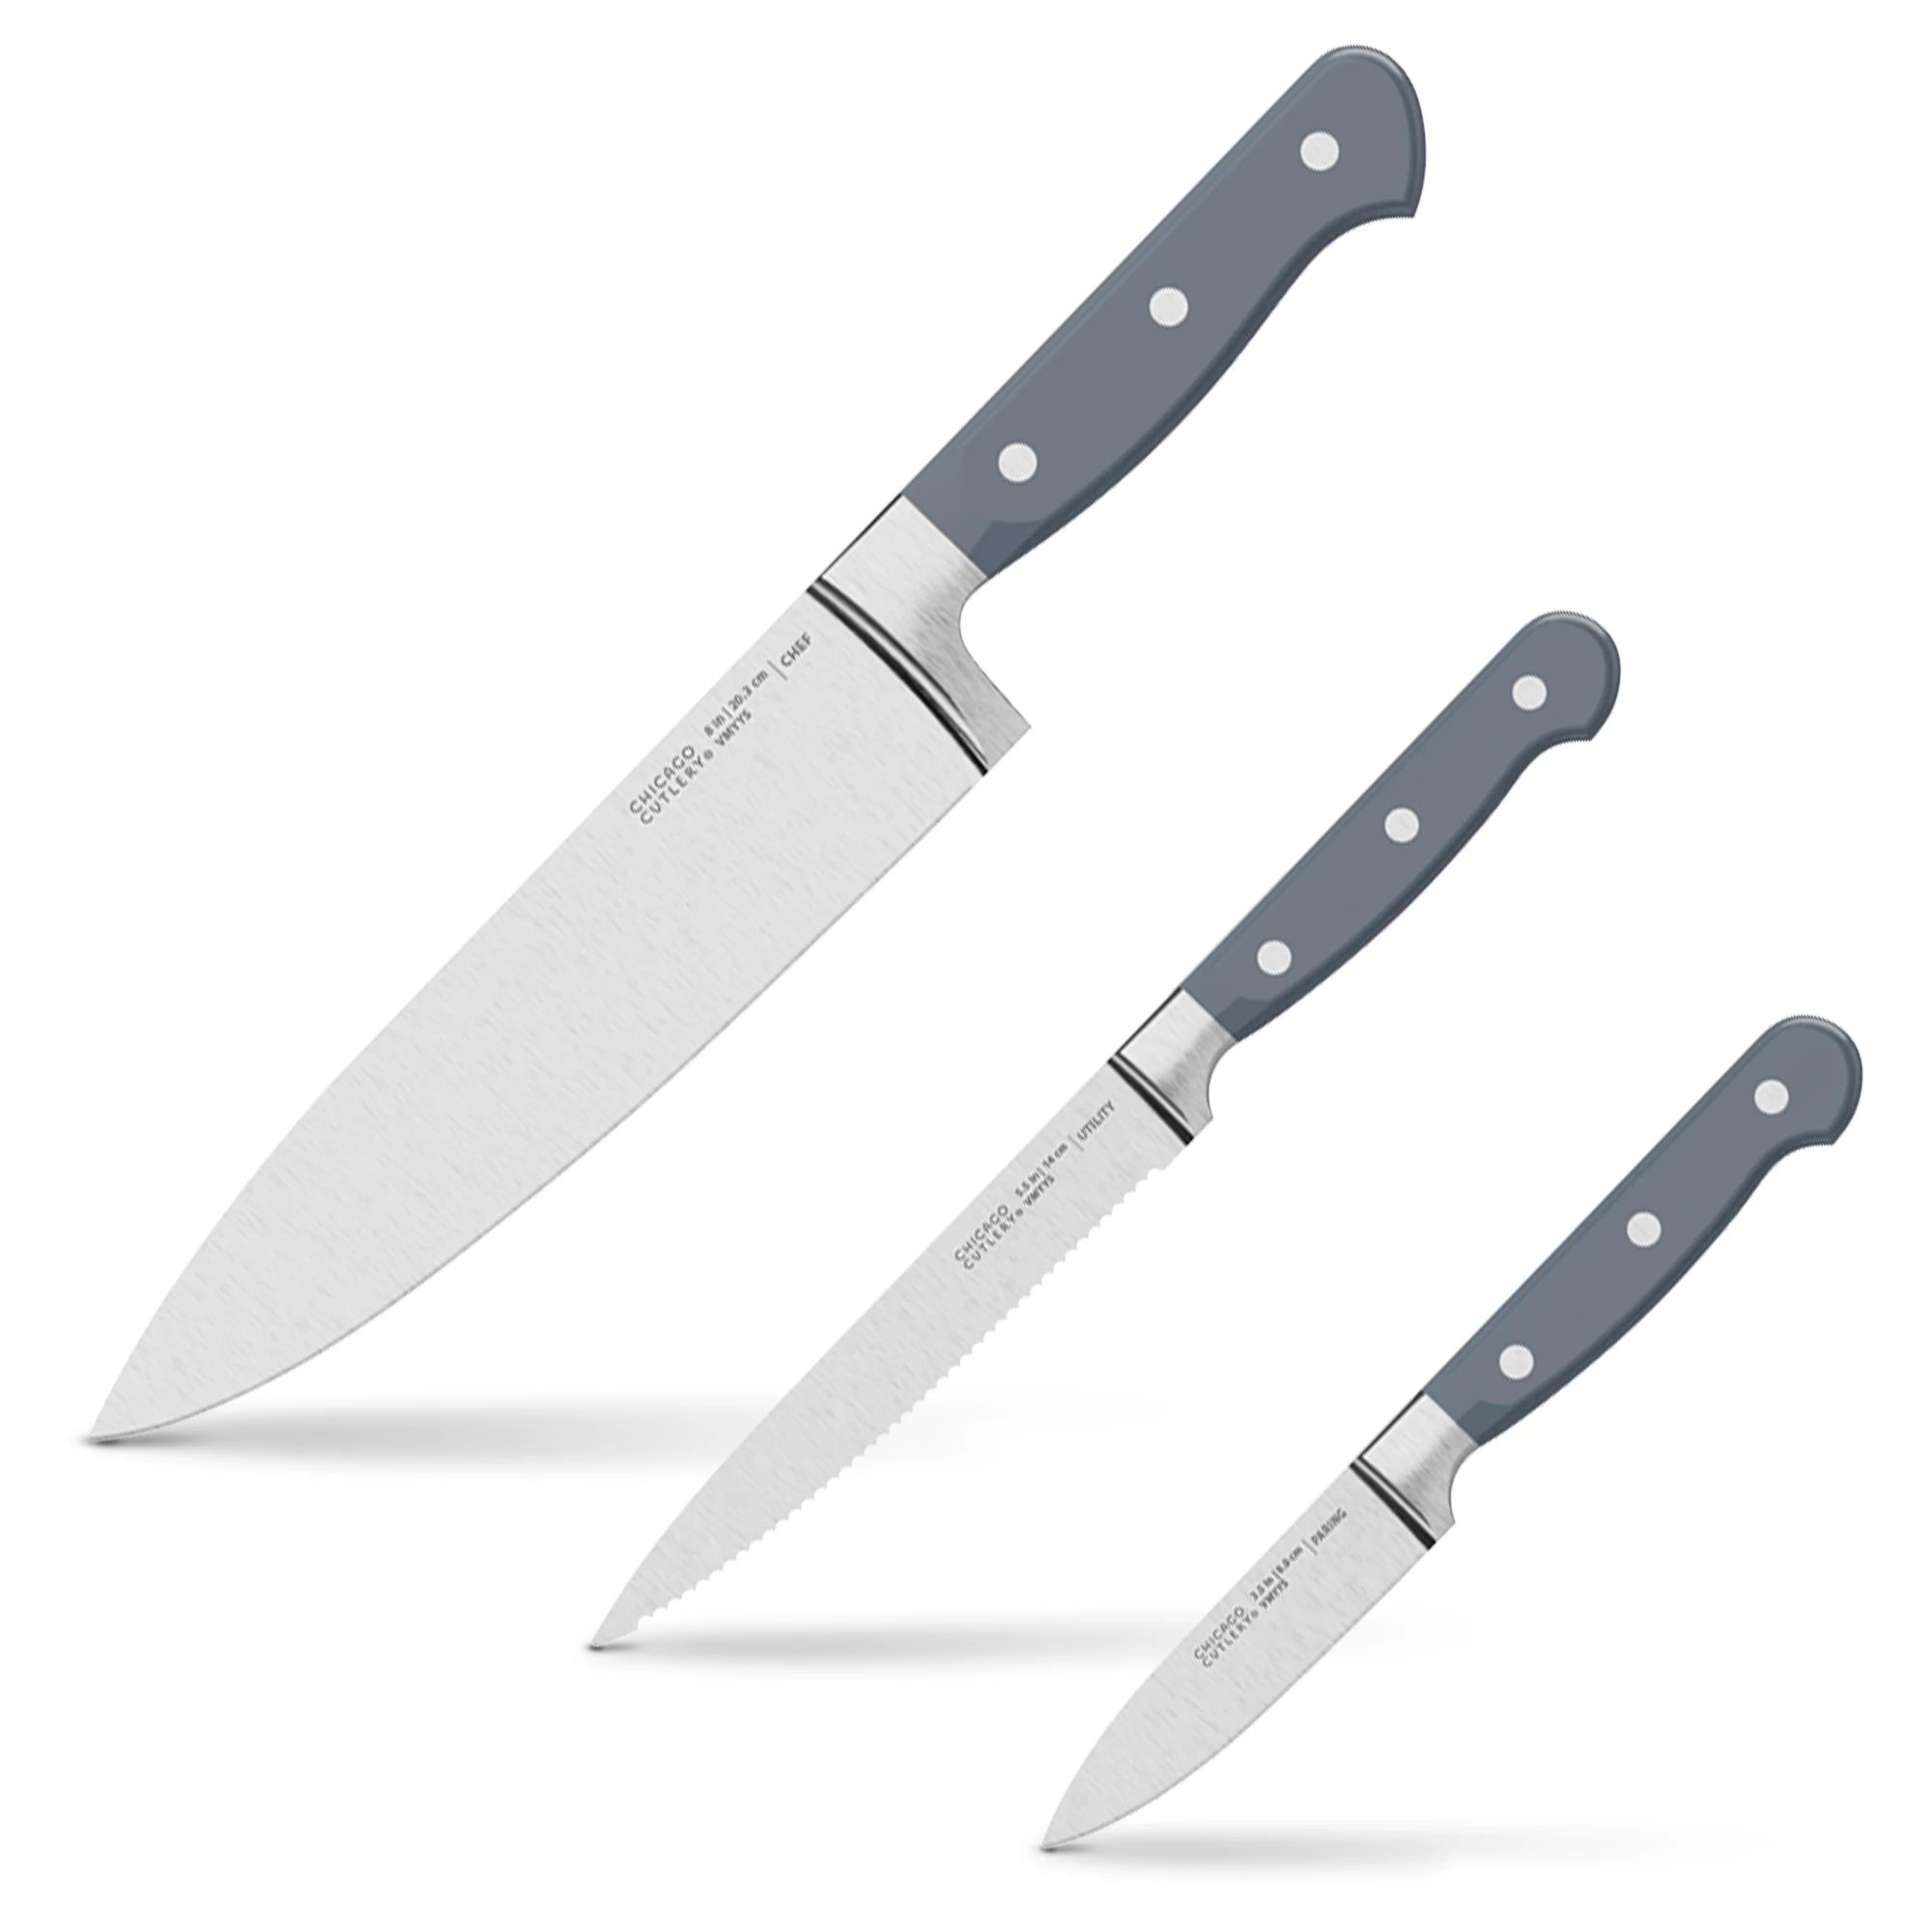 Chicago Cutlery Essentials 3 Piece Set - KnifeCenter - C01392